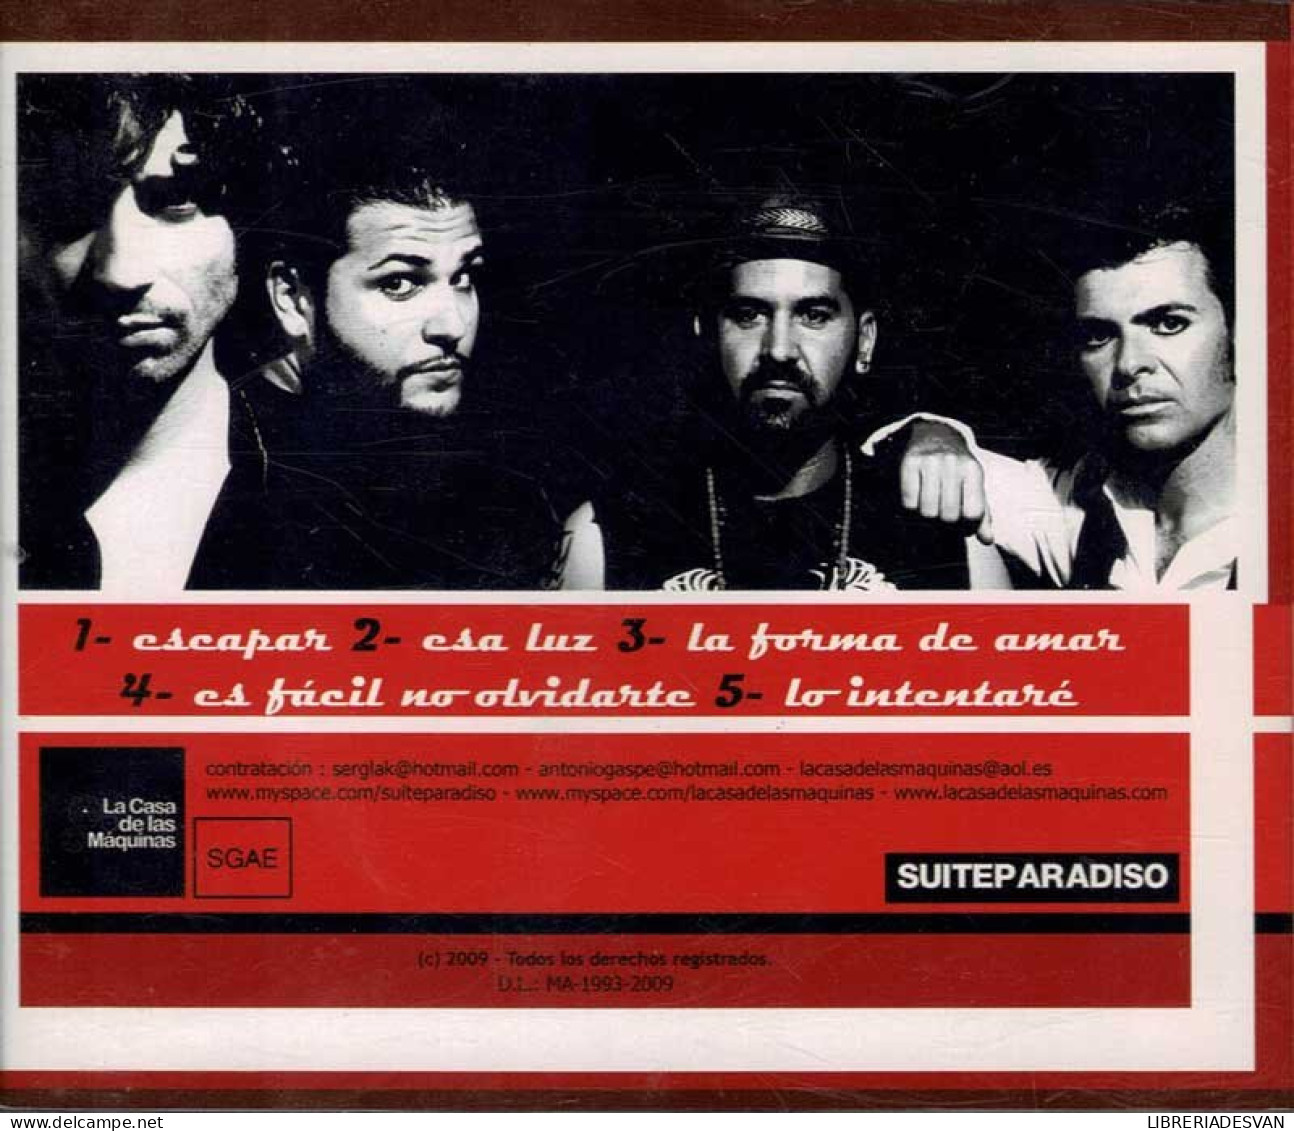 Suiteparadiso - Suiteparadiso. CD - Disco, Pop